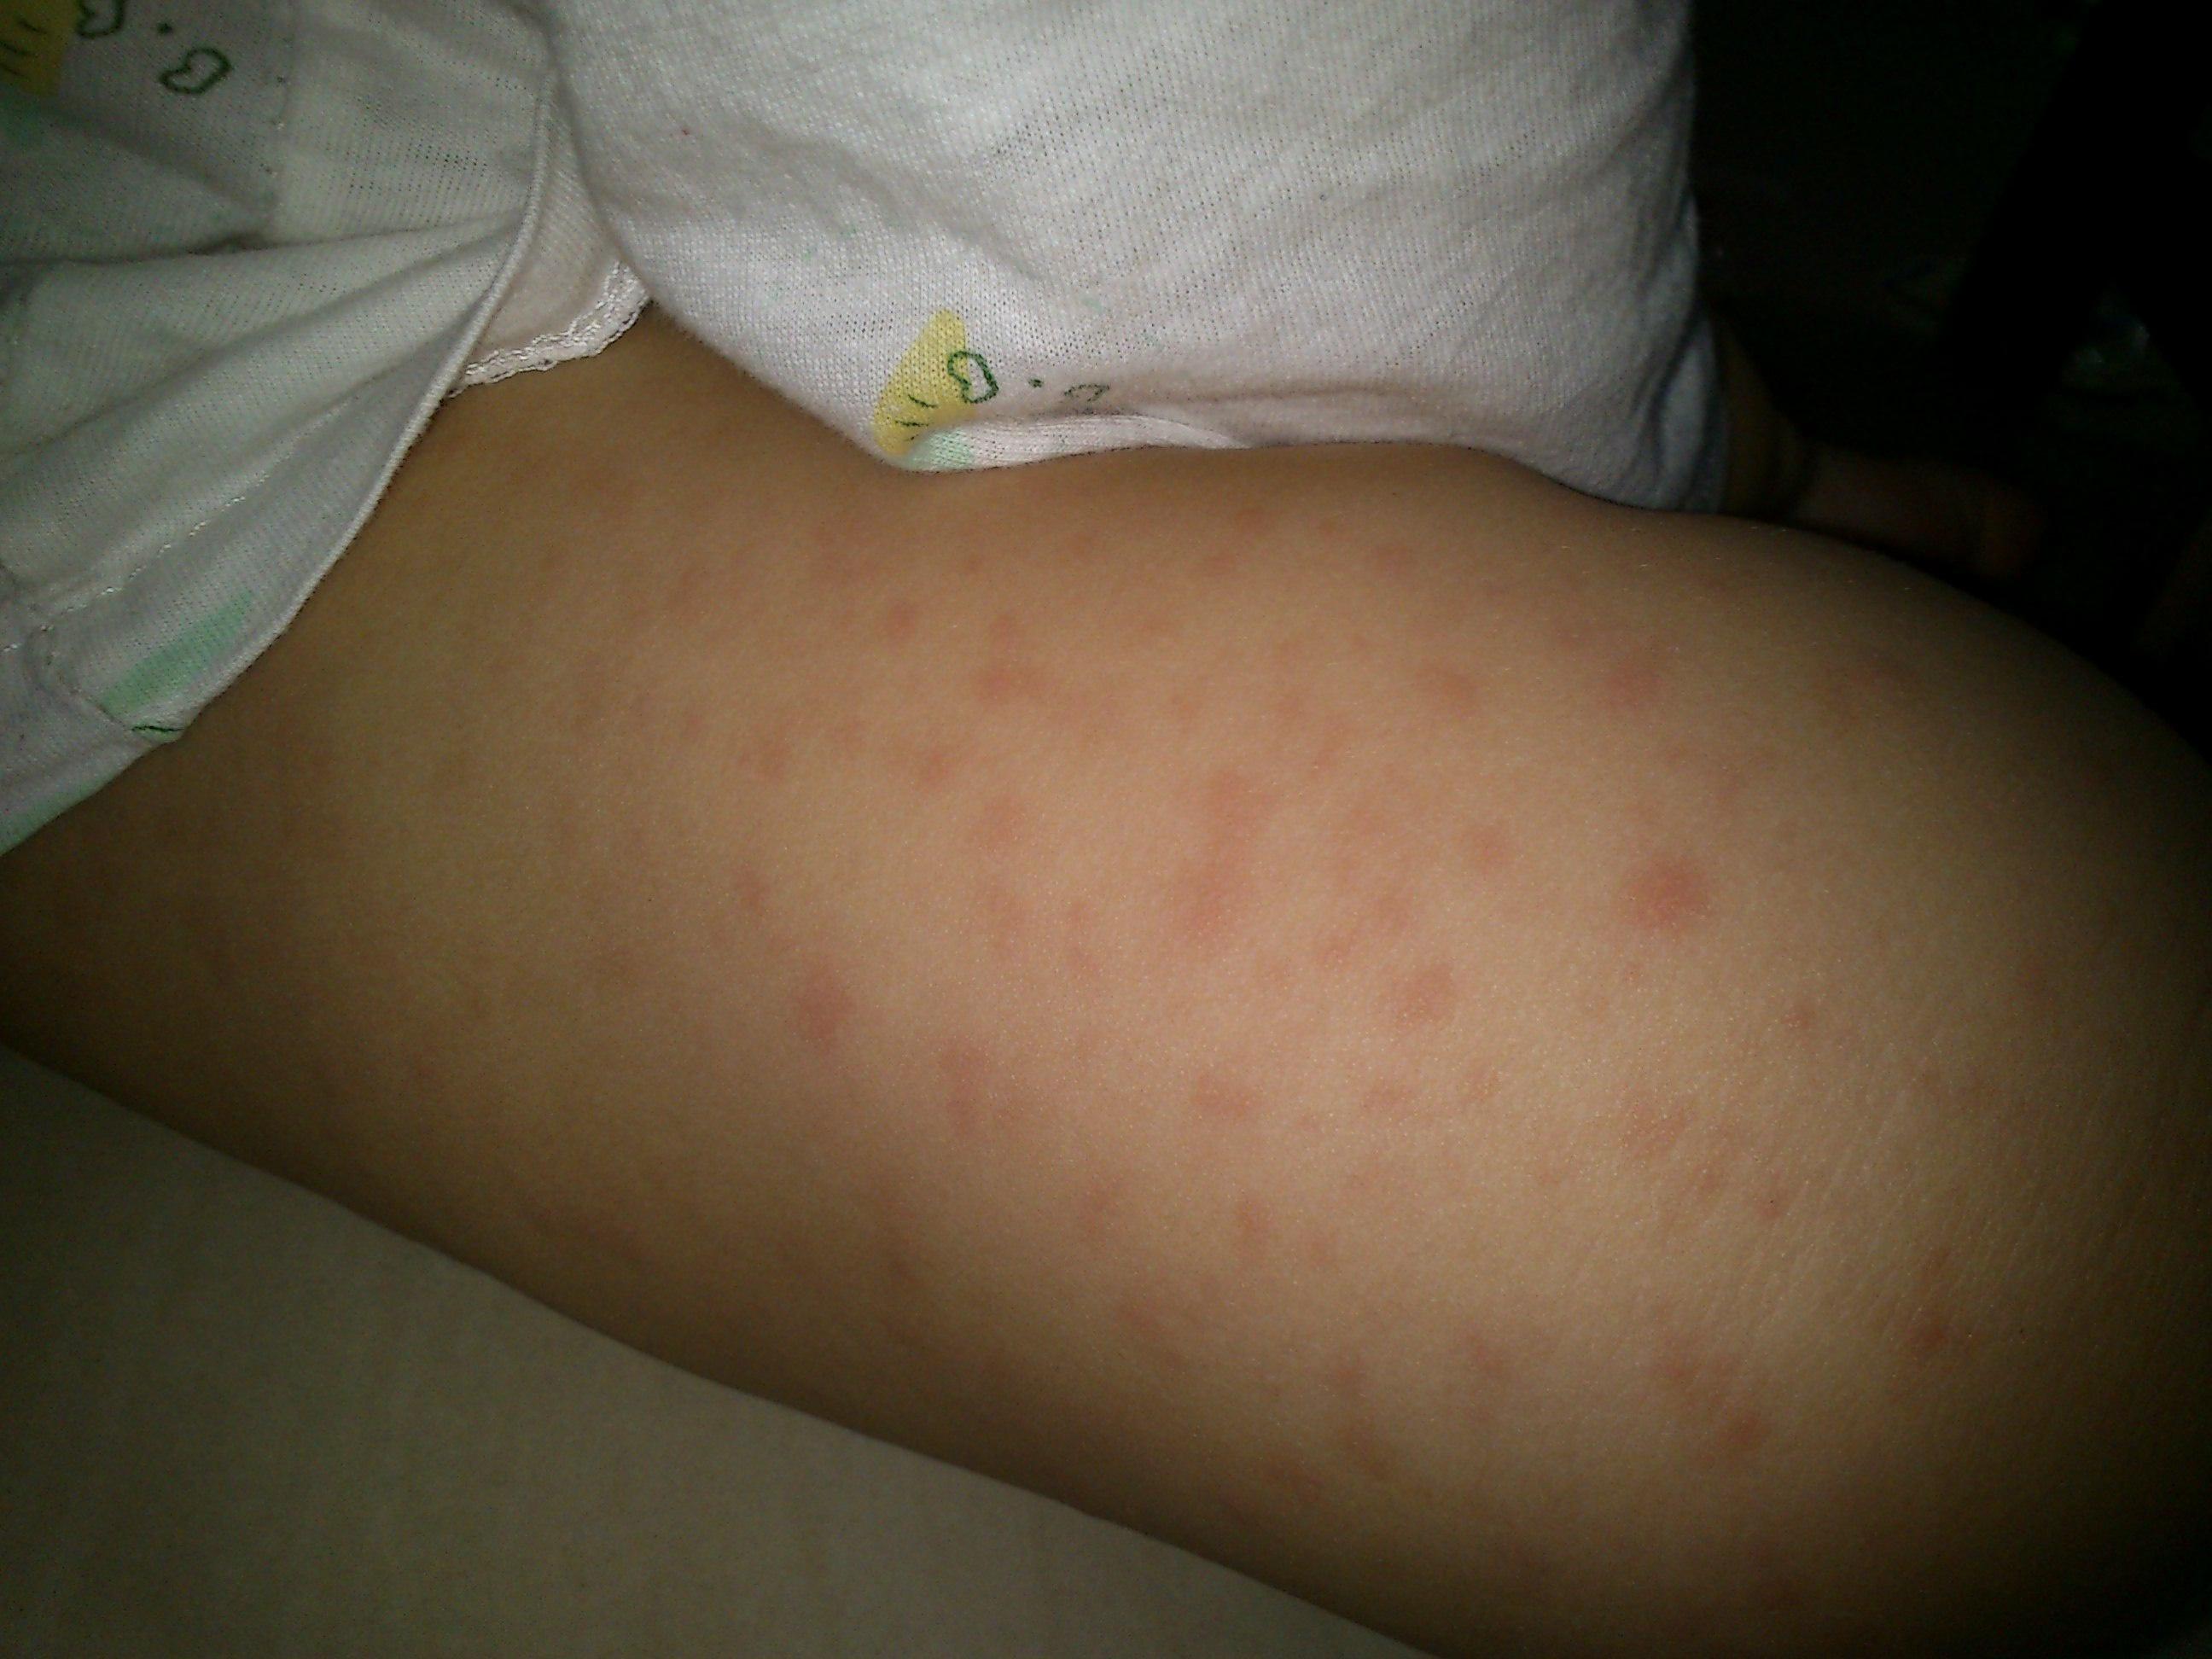 这是小儿麻疹还是风疹?还别的什么?